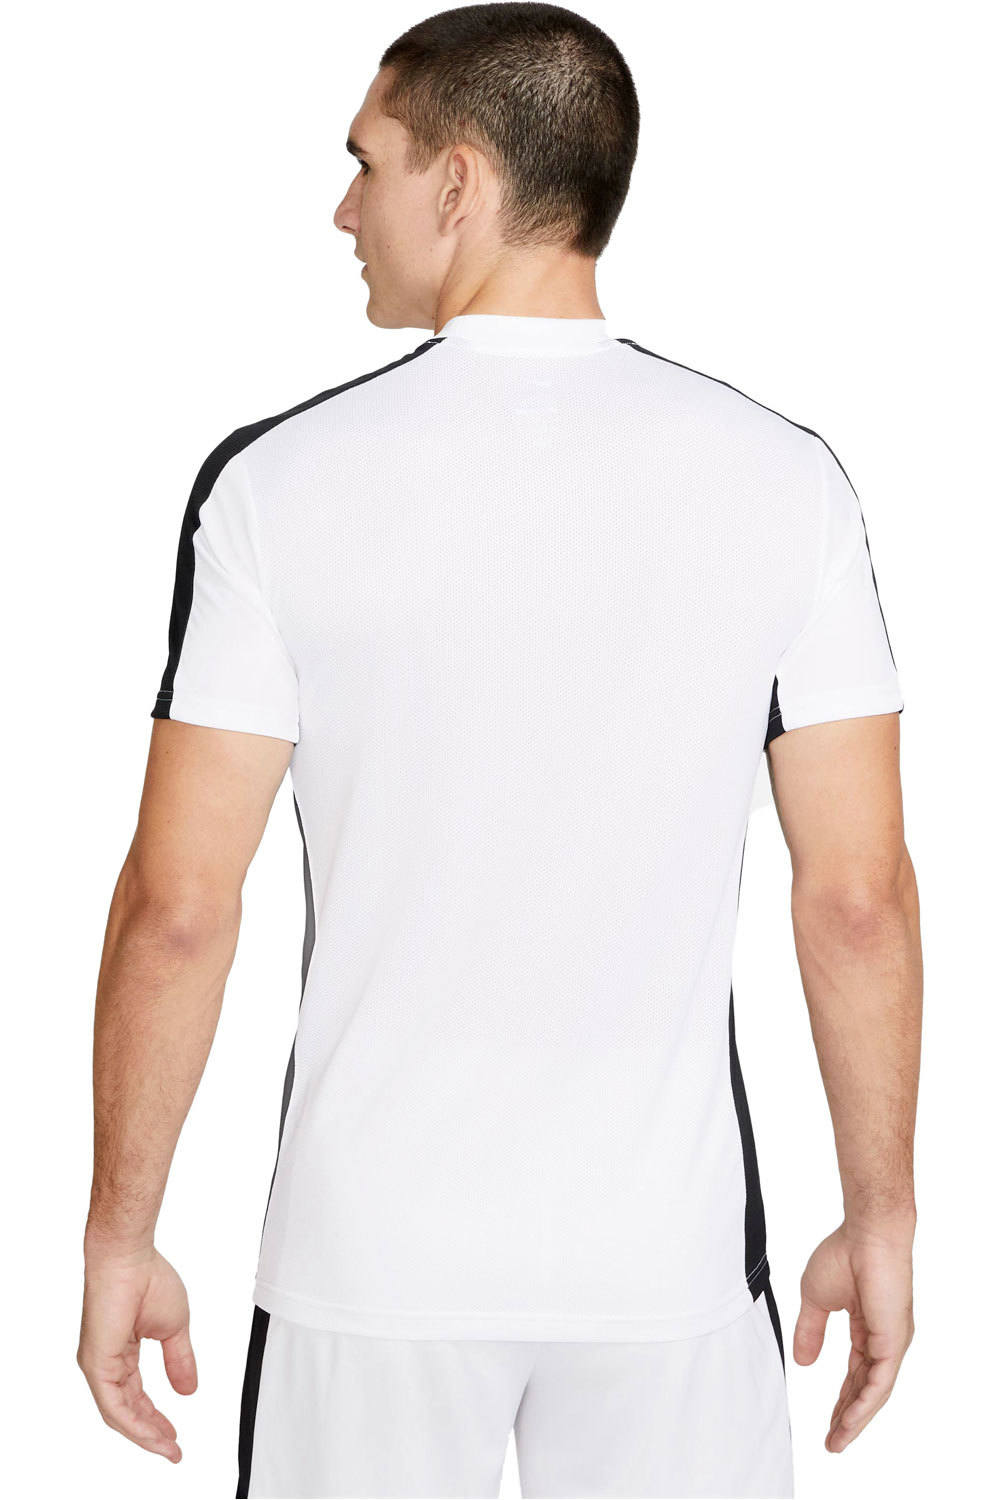 Nike camisetas fútbol manga corta M NK DF ACD23 TOP BLNE vista trasera